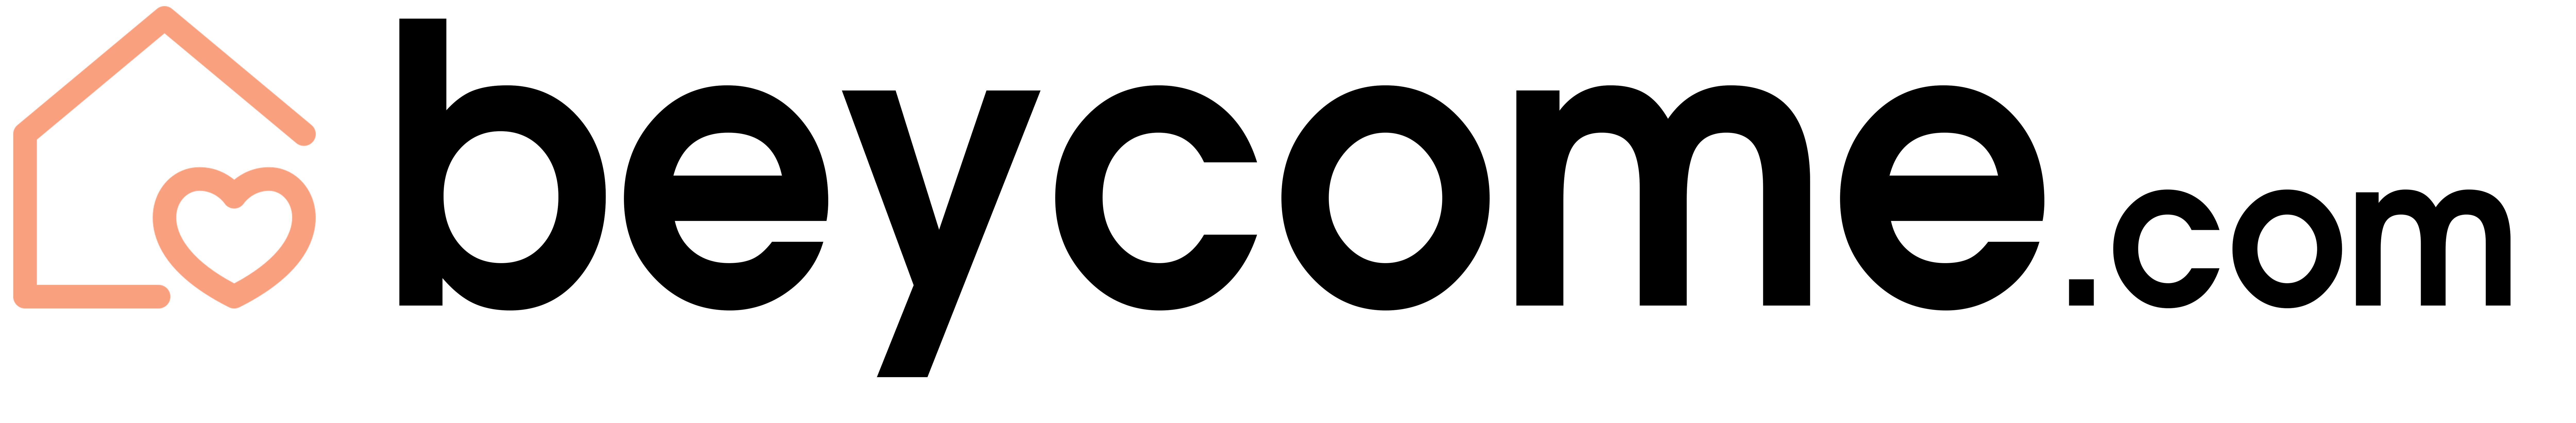 beycome.com logo